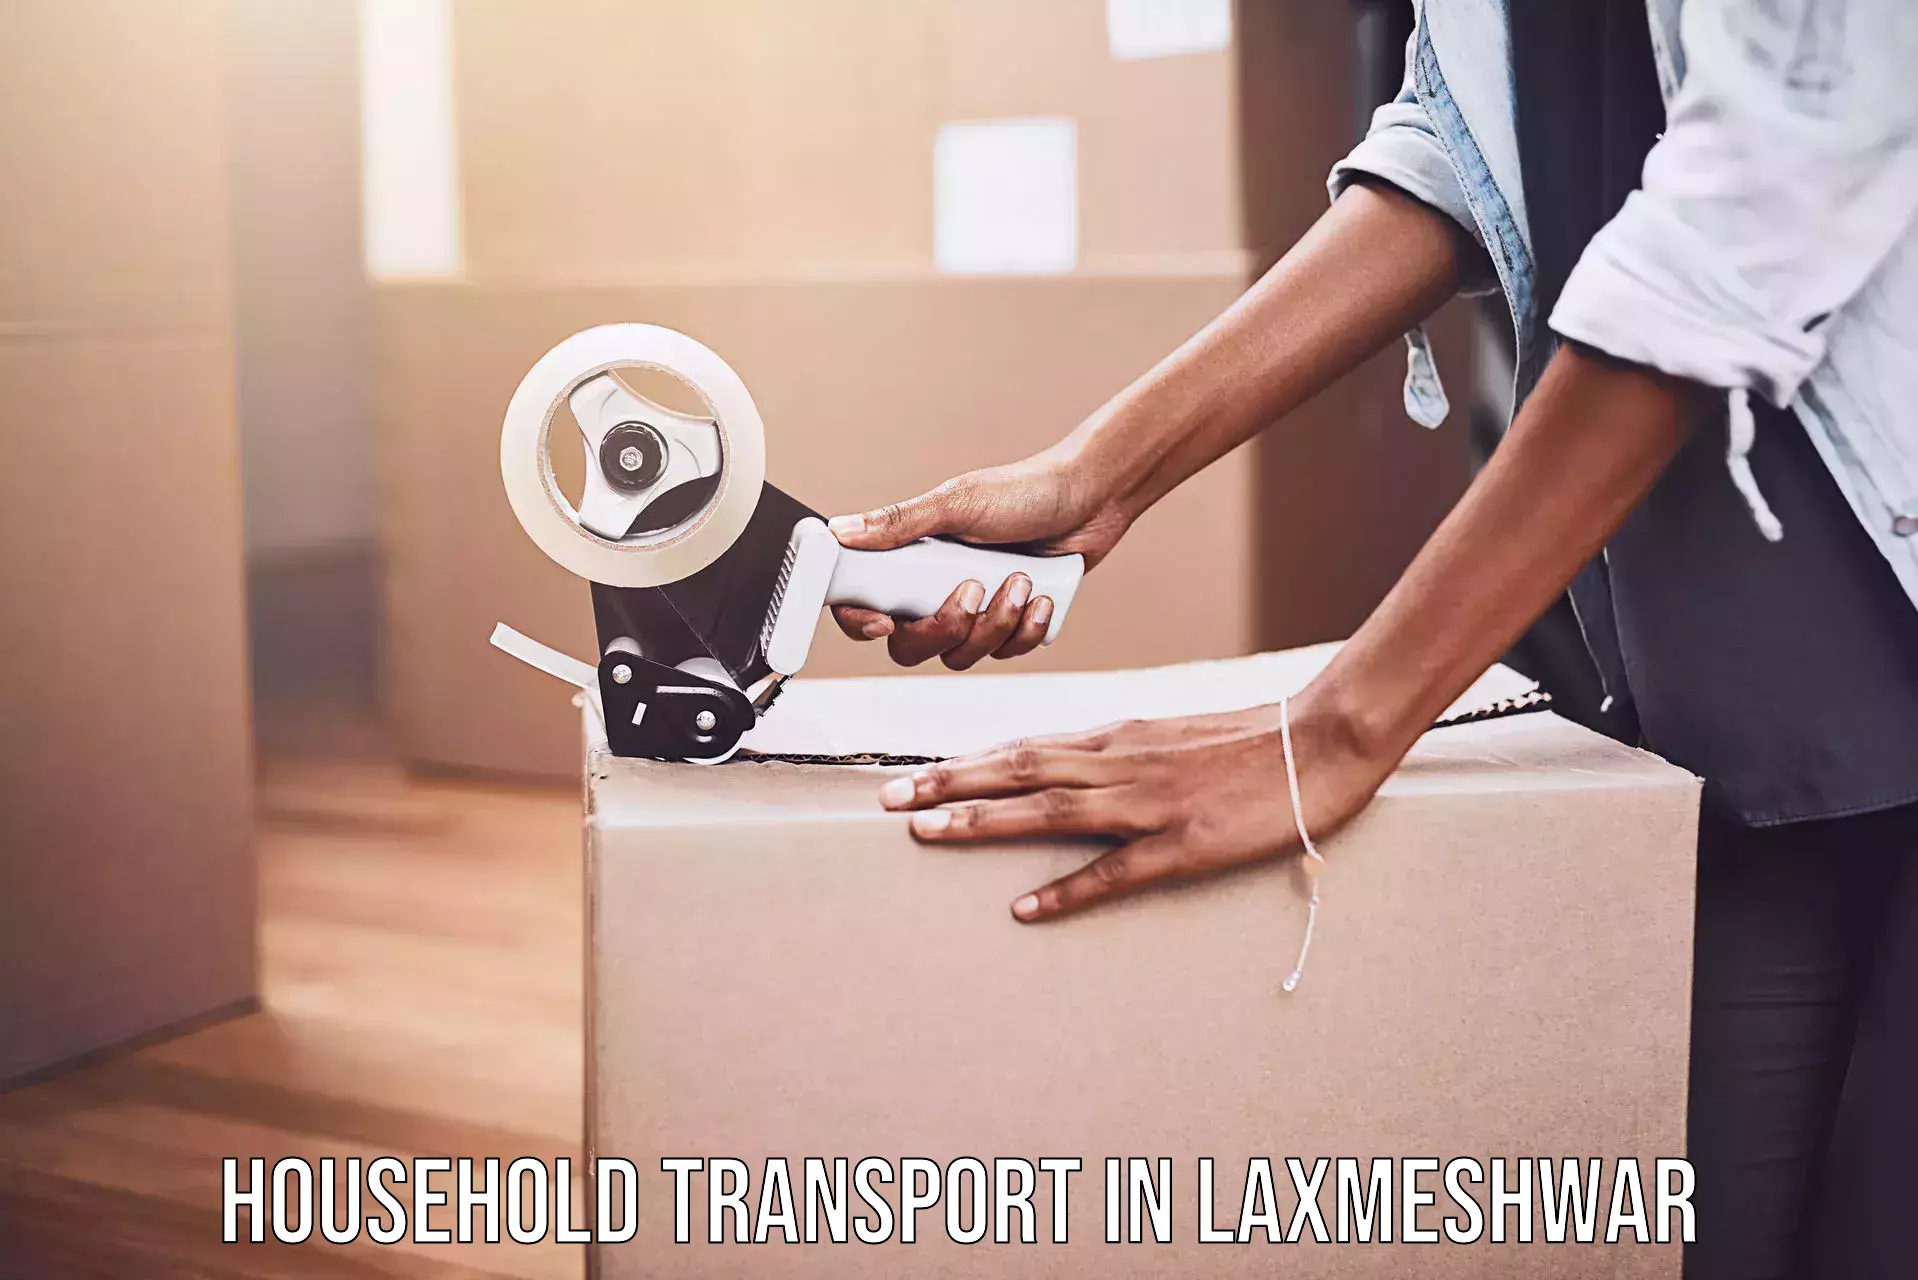 Skilled household transport in Laxmeshwar